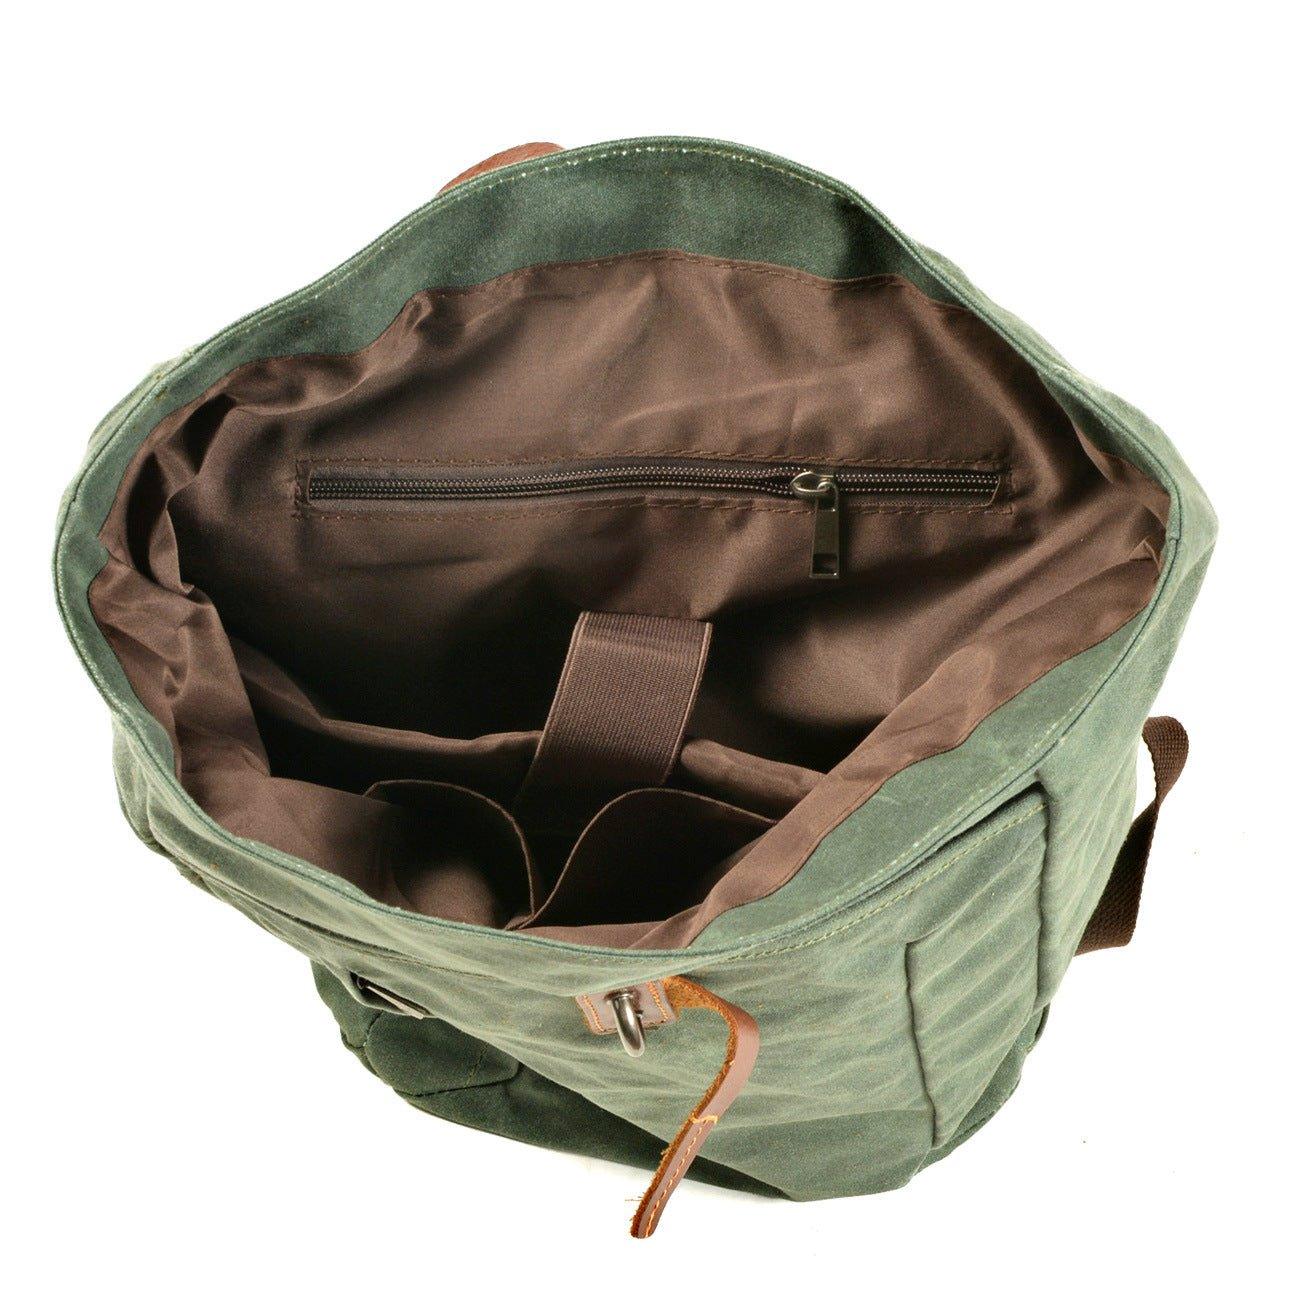 OPEN-UPDISPLAY of Woosir Expandable Roll Top Waterproof Backpack